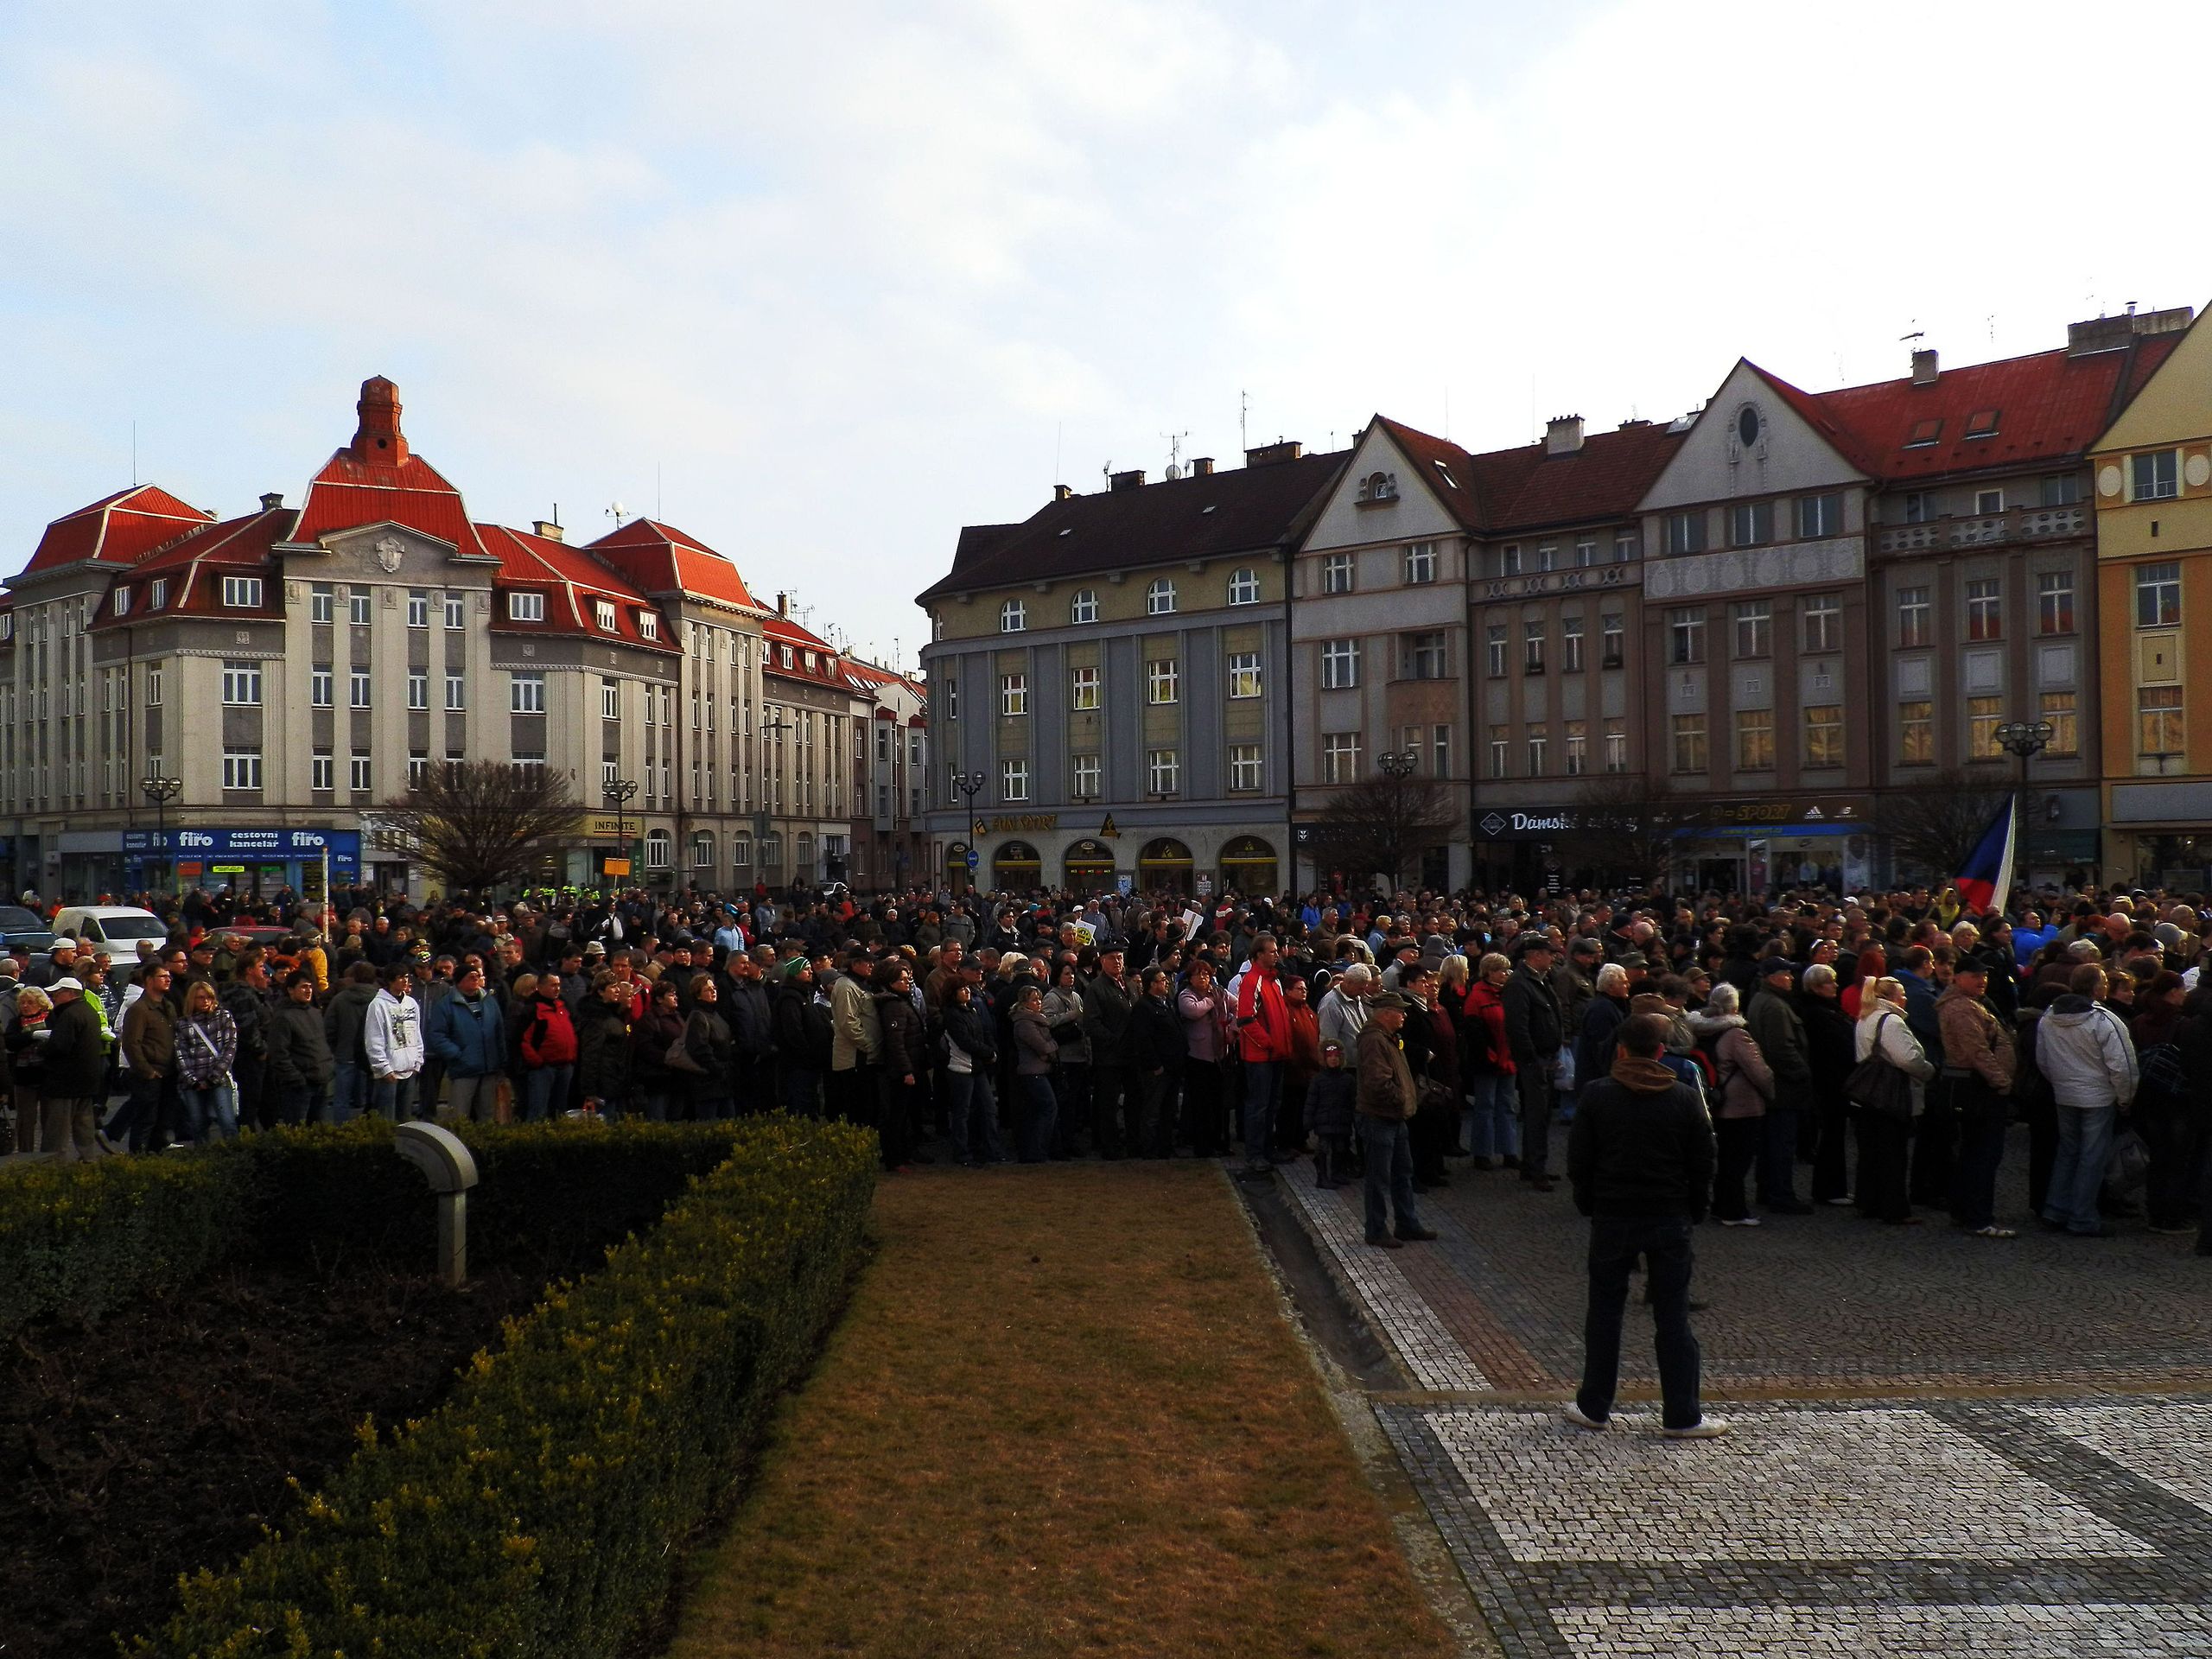 Lidé demonstrují proti vládě ČR a prezidentovi - 1 - Lidé protestují proti vládě Petra Nečase a prezidentu Klausovi (1/15)